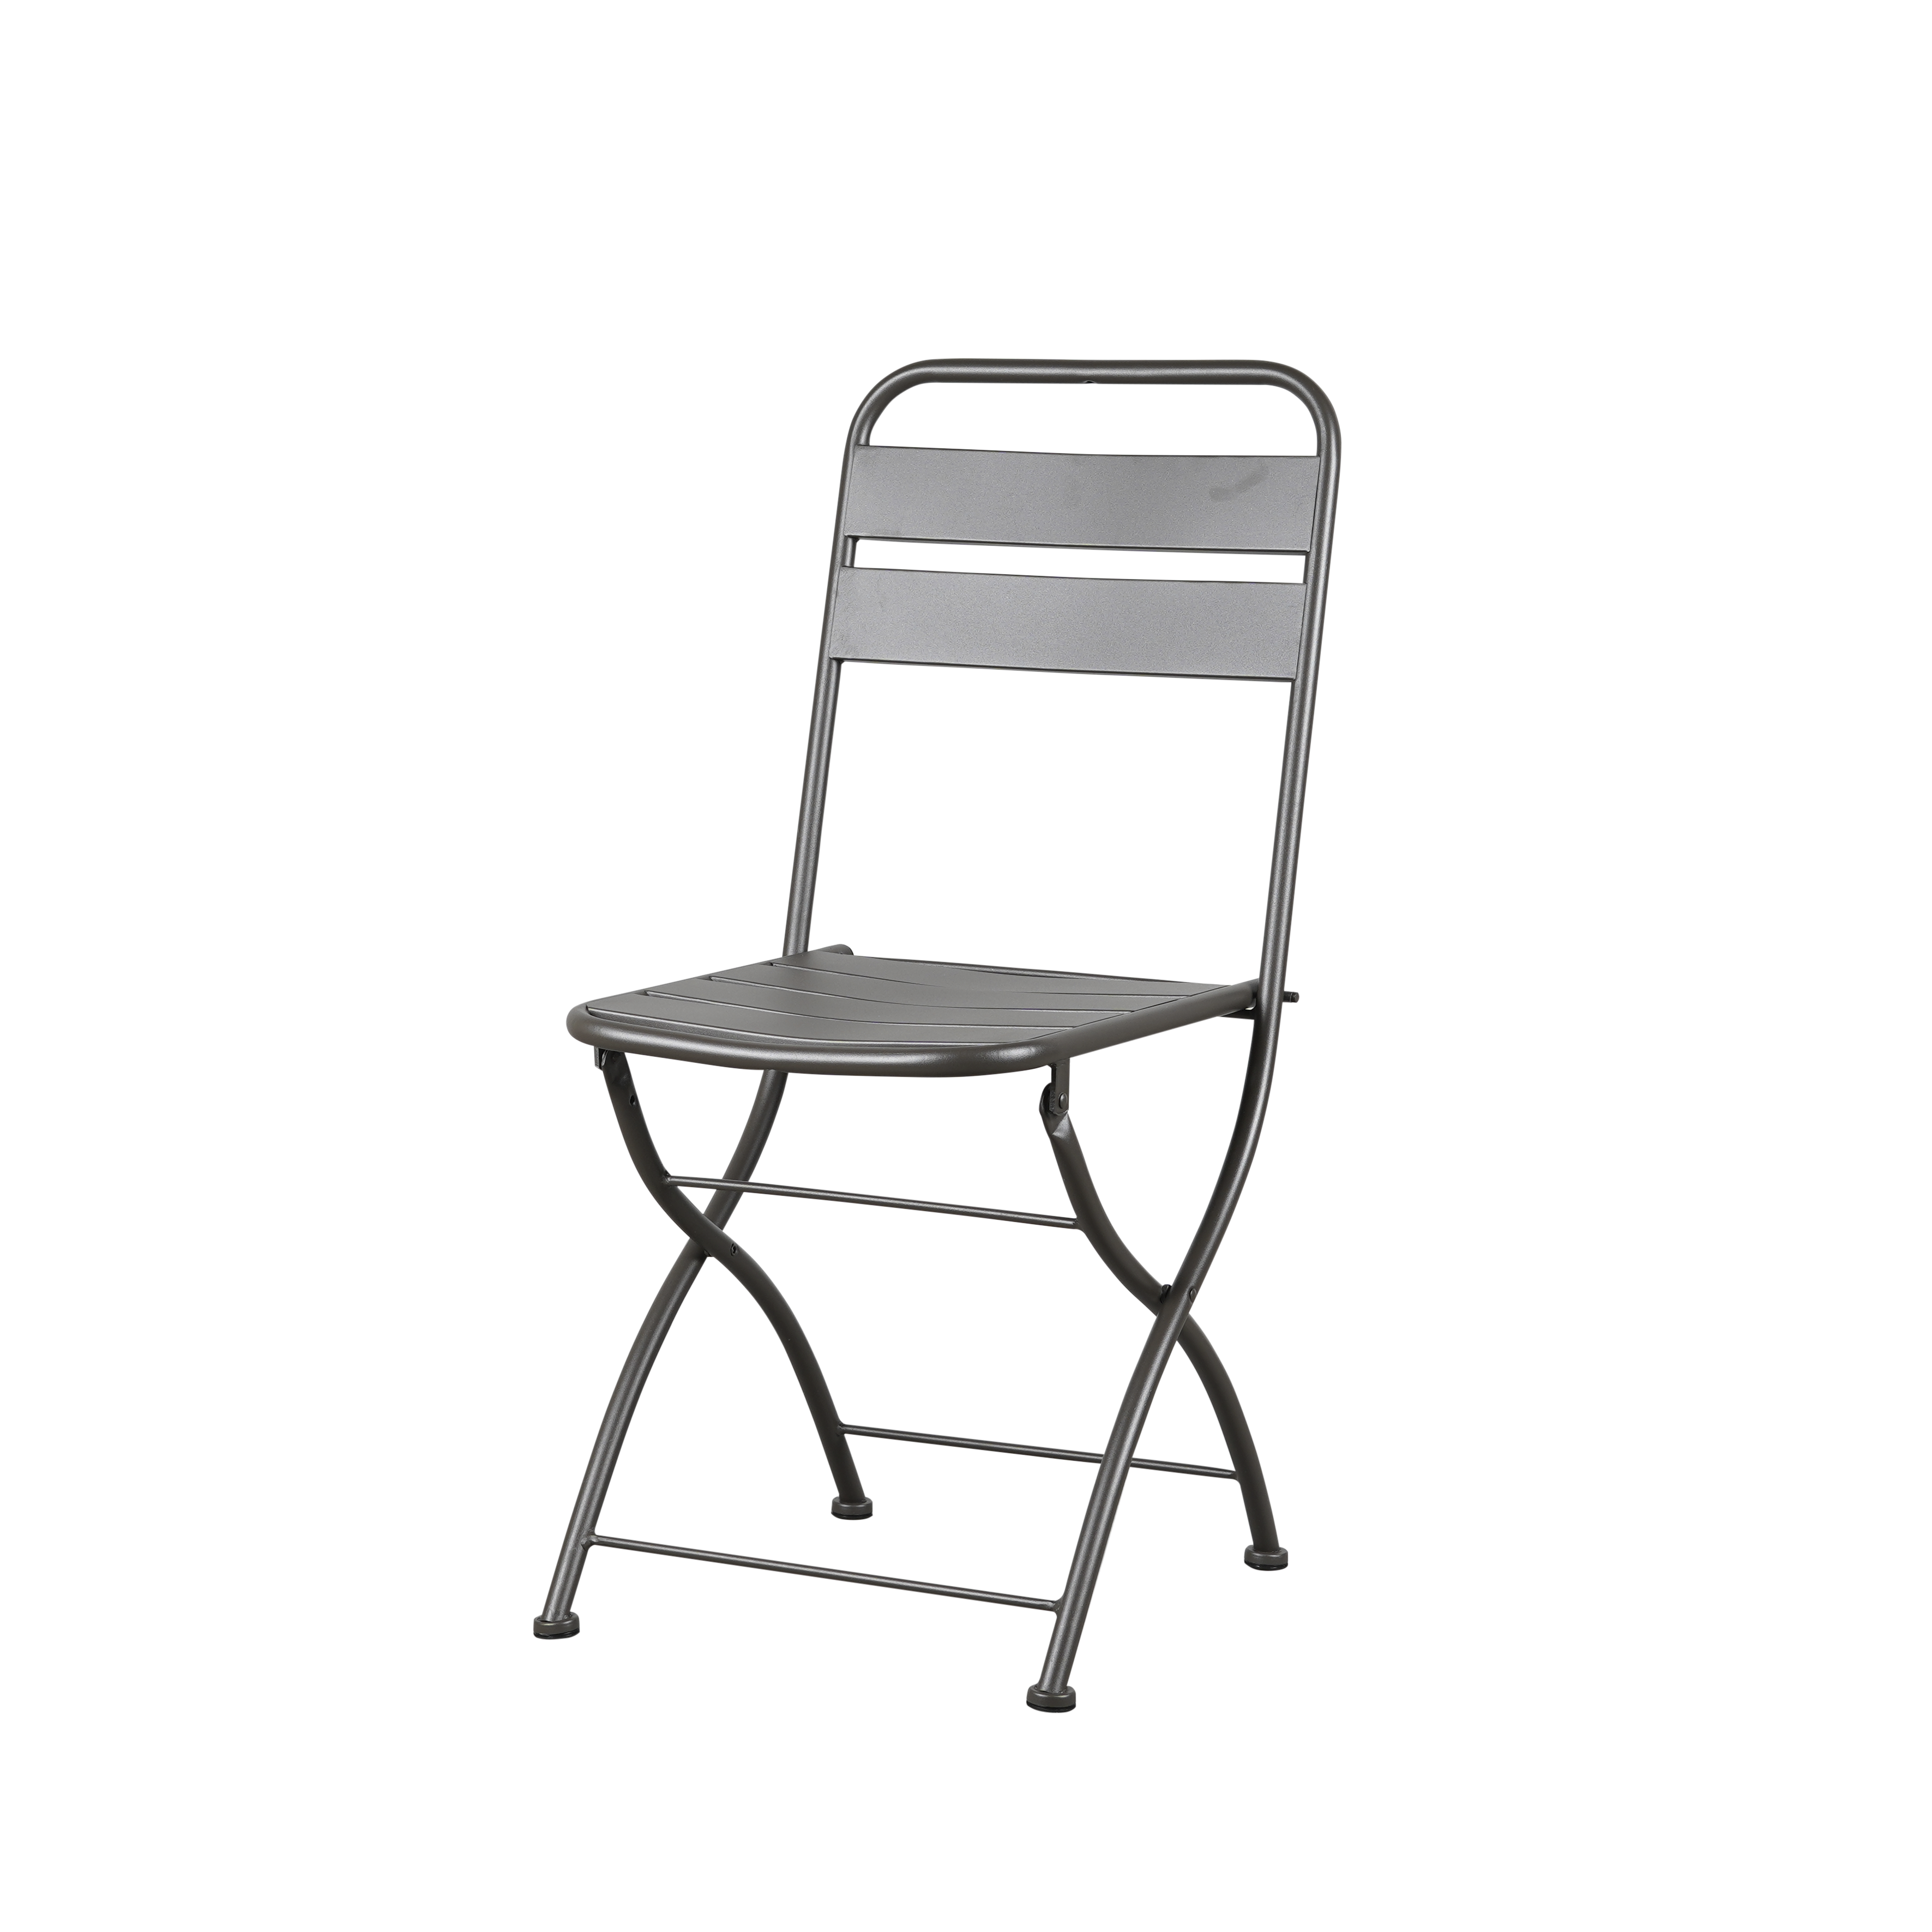 Foldy Outdoor Chair